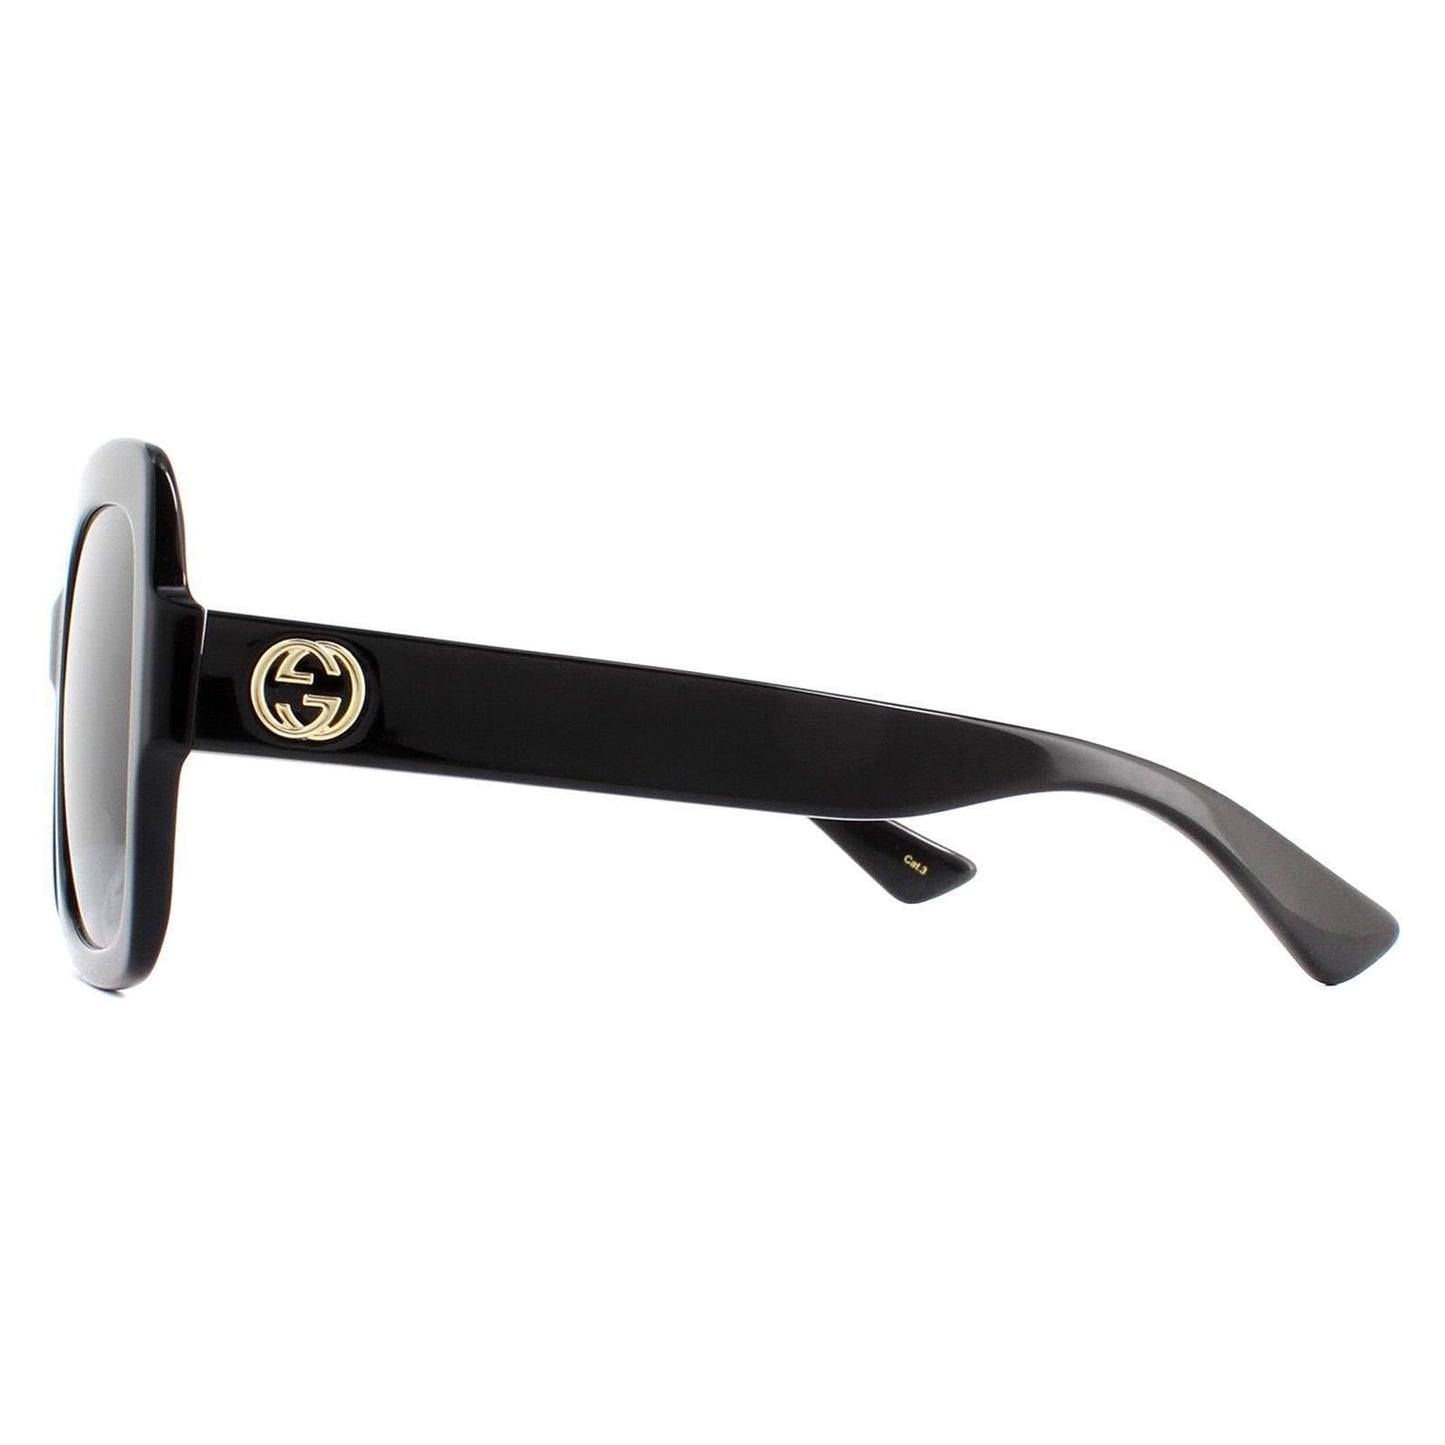 Gucci GG0036SN-001 54mm New Sunglasses